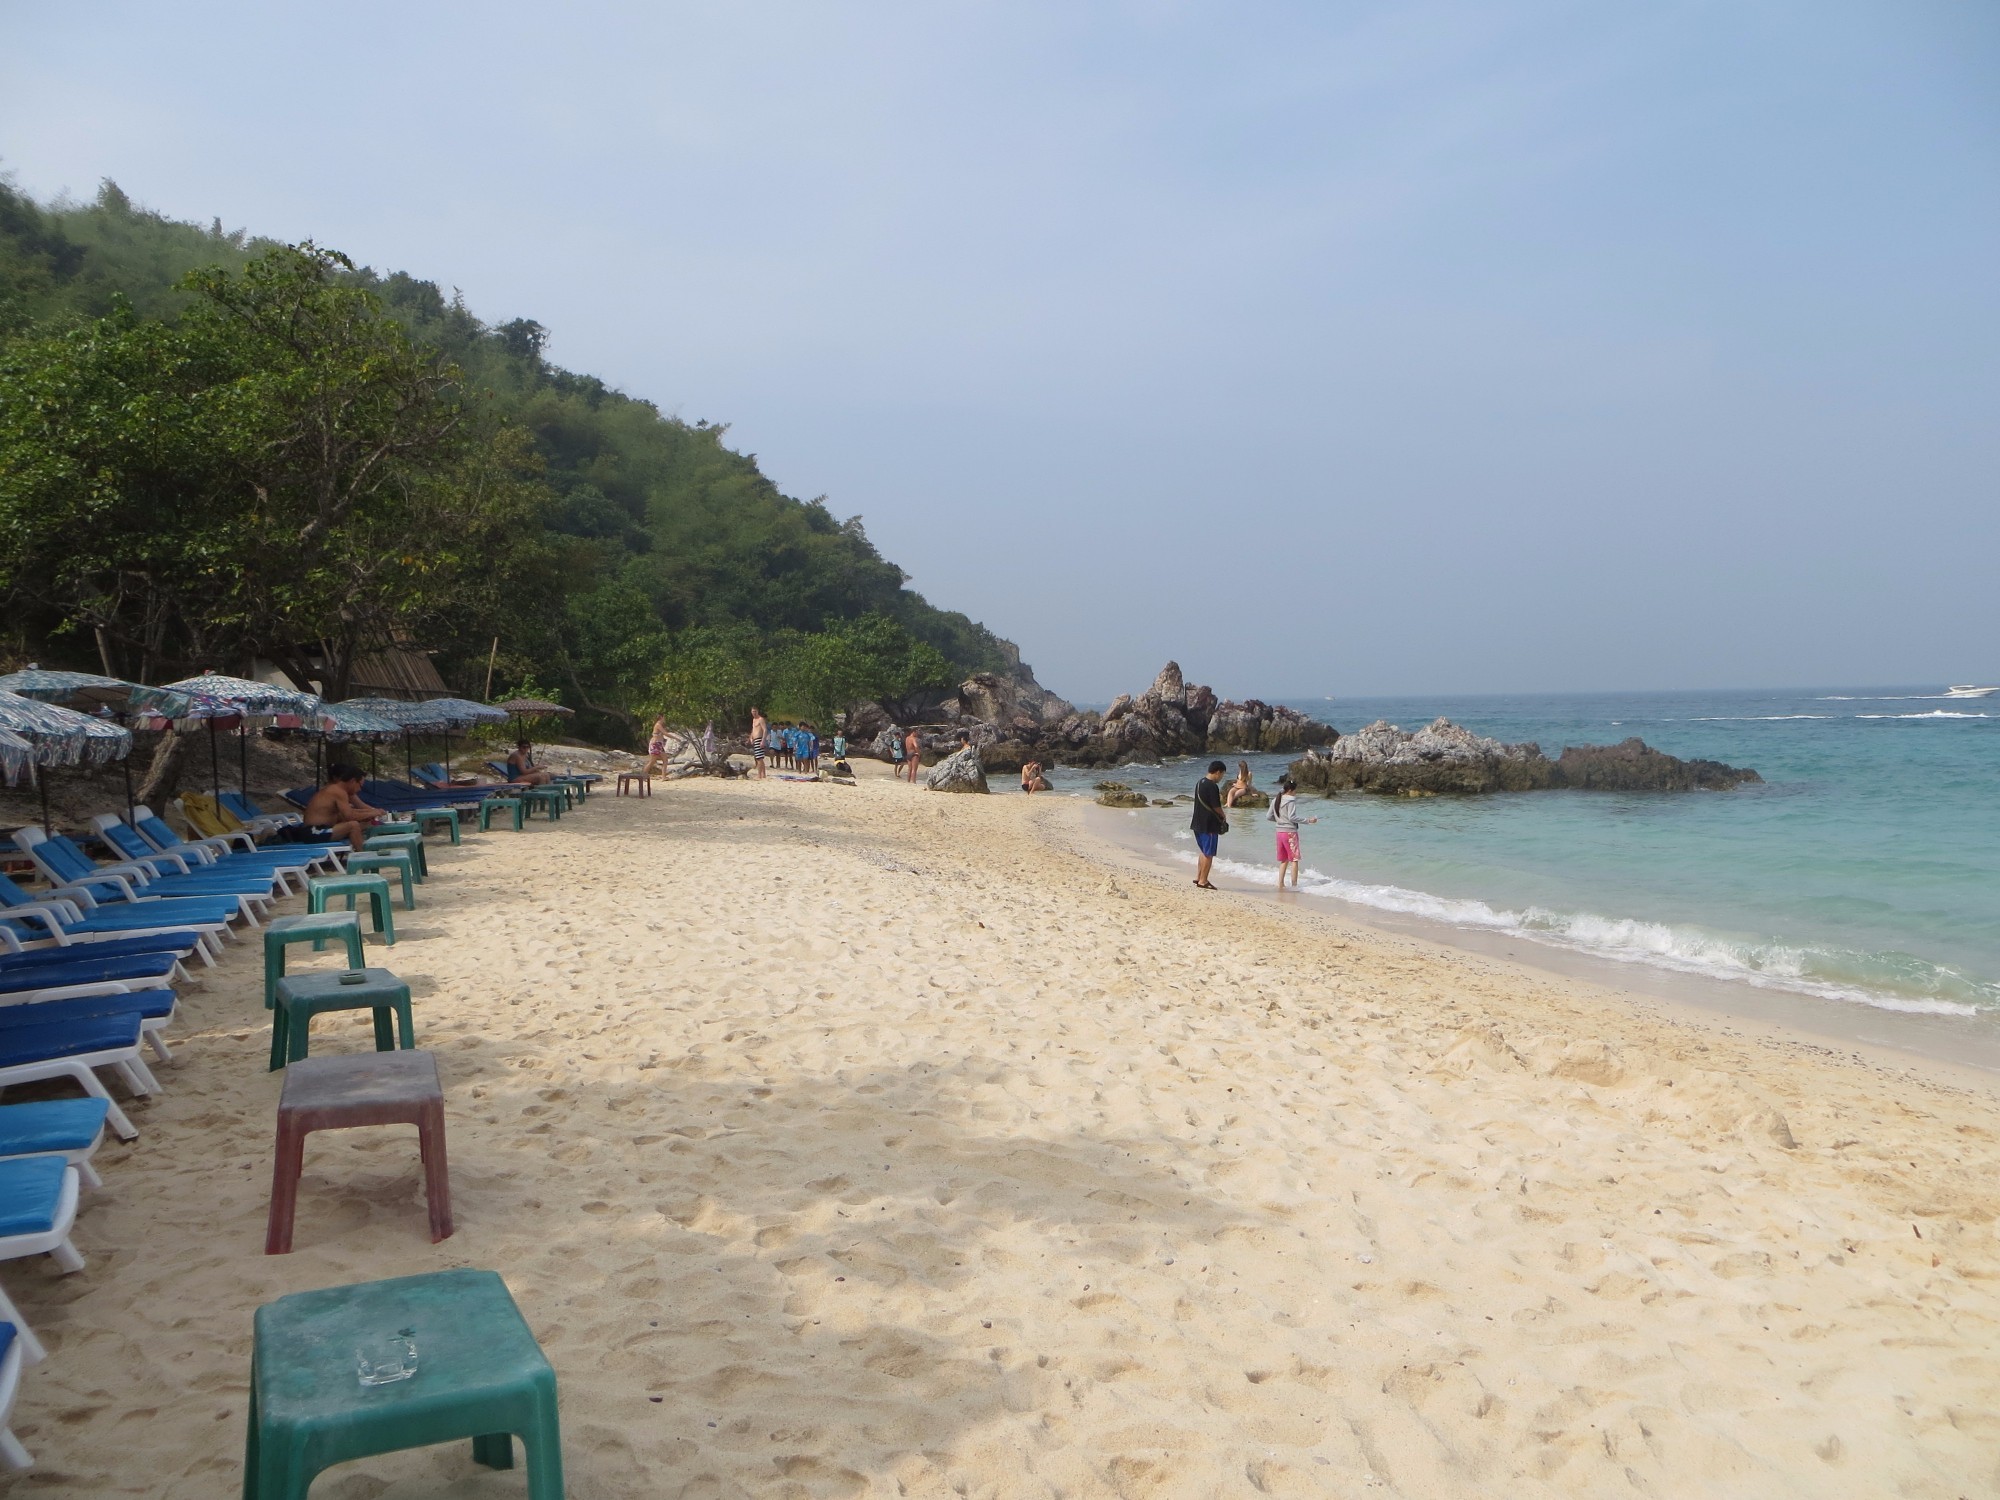 Один из дальних пляжей Ко Лана. Плюсы очень мало народа, минусы дорого добираться высокие цены на лежаки и еду.